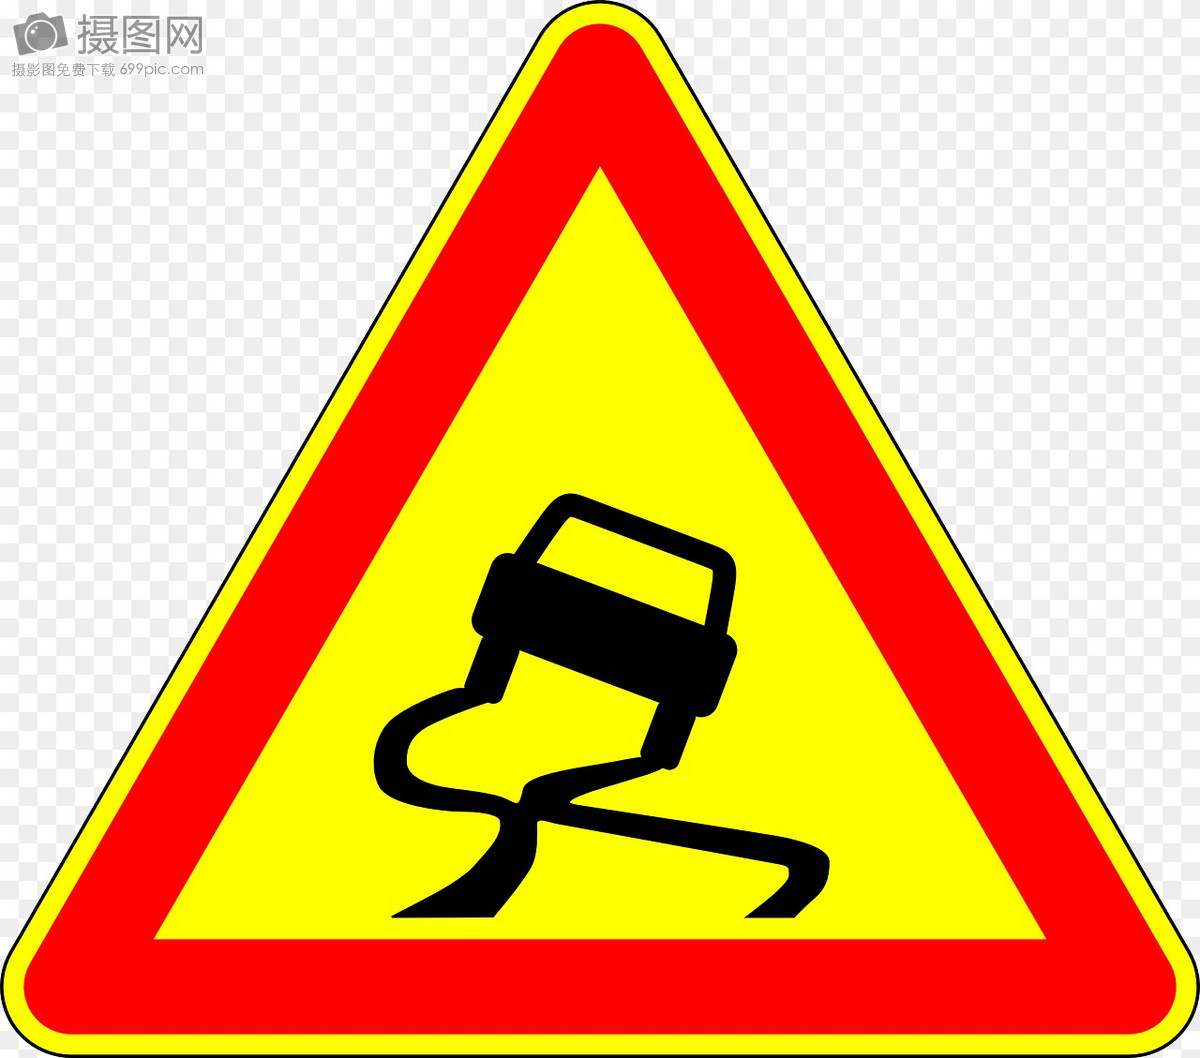 举报 标签: 交通标志提醒标志警告路滑路段道路标志道路标志牌易滑